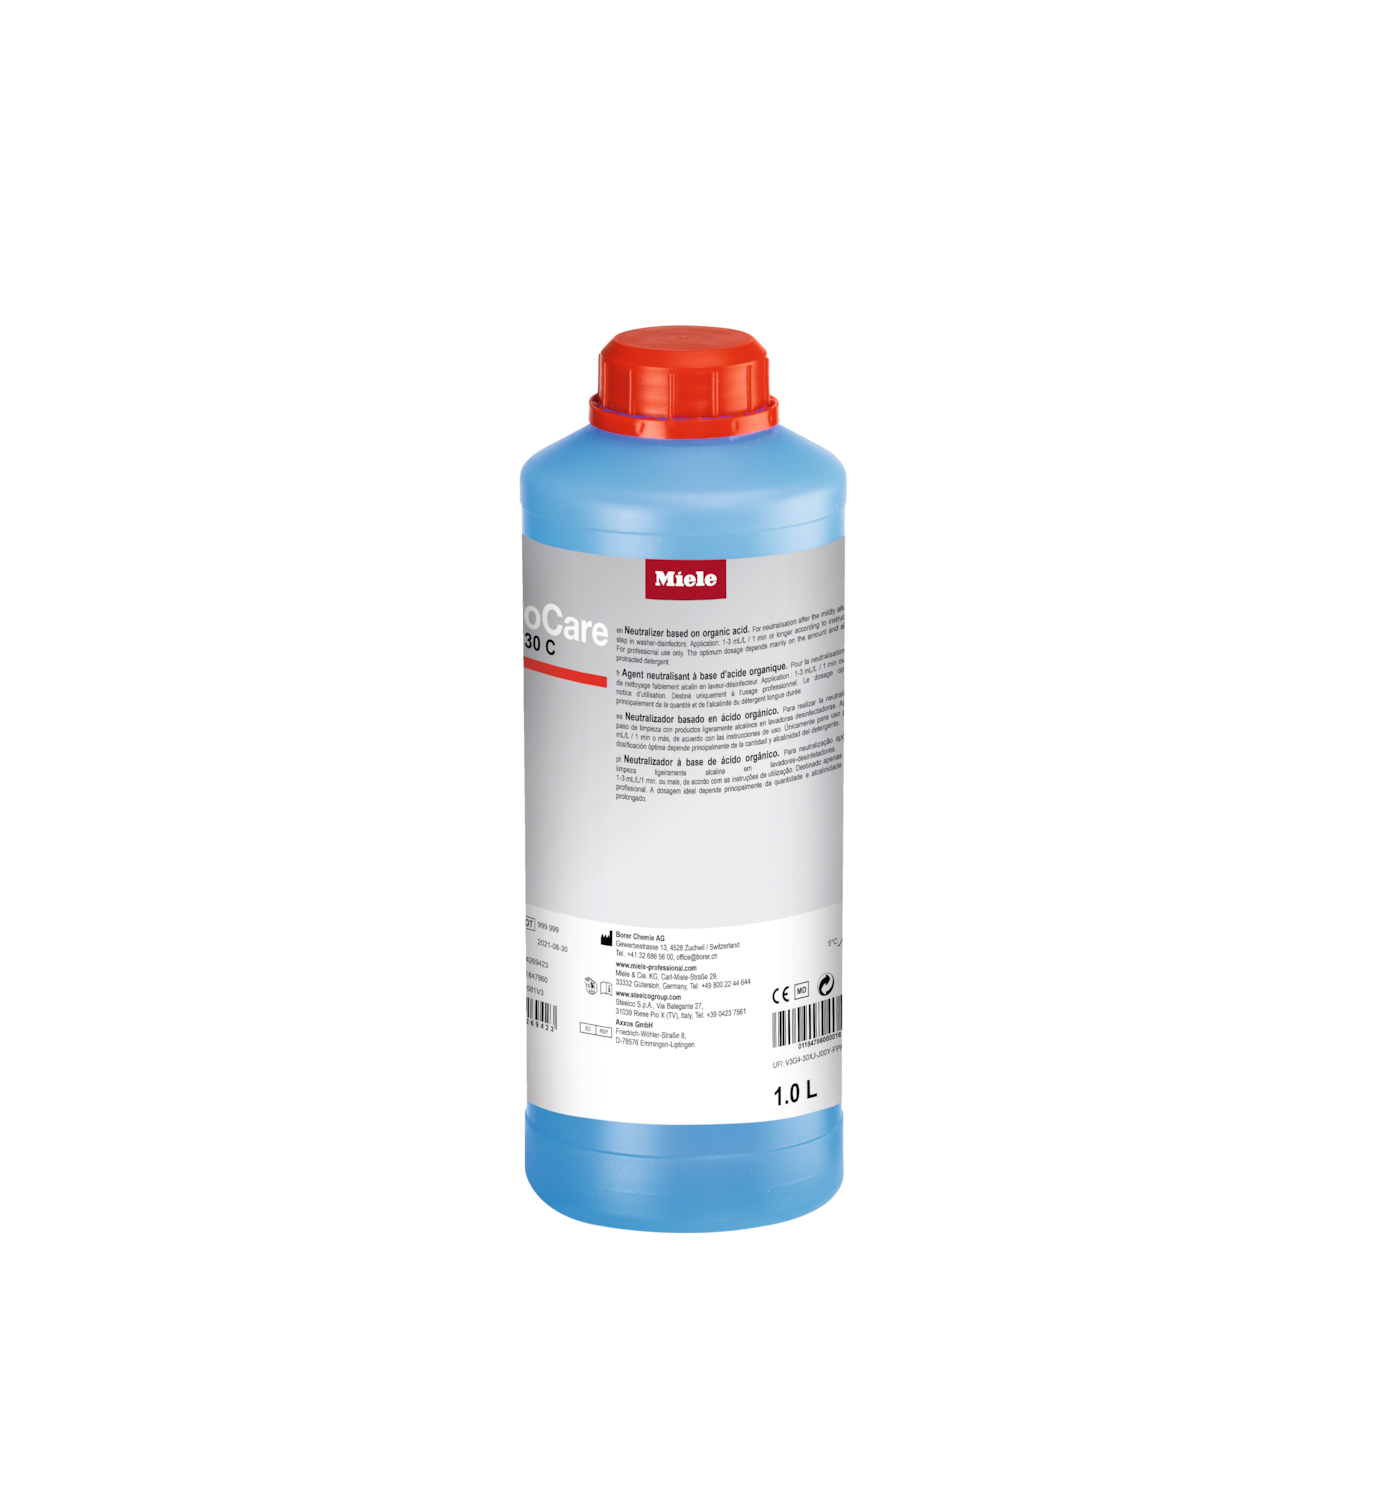 ProCare Med 30 C - 1 l [Typ 2] Produto neutralizador, ácido, 1 l fotografia do produto Front View ZOOM